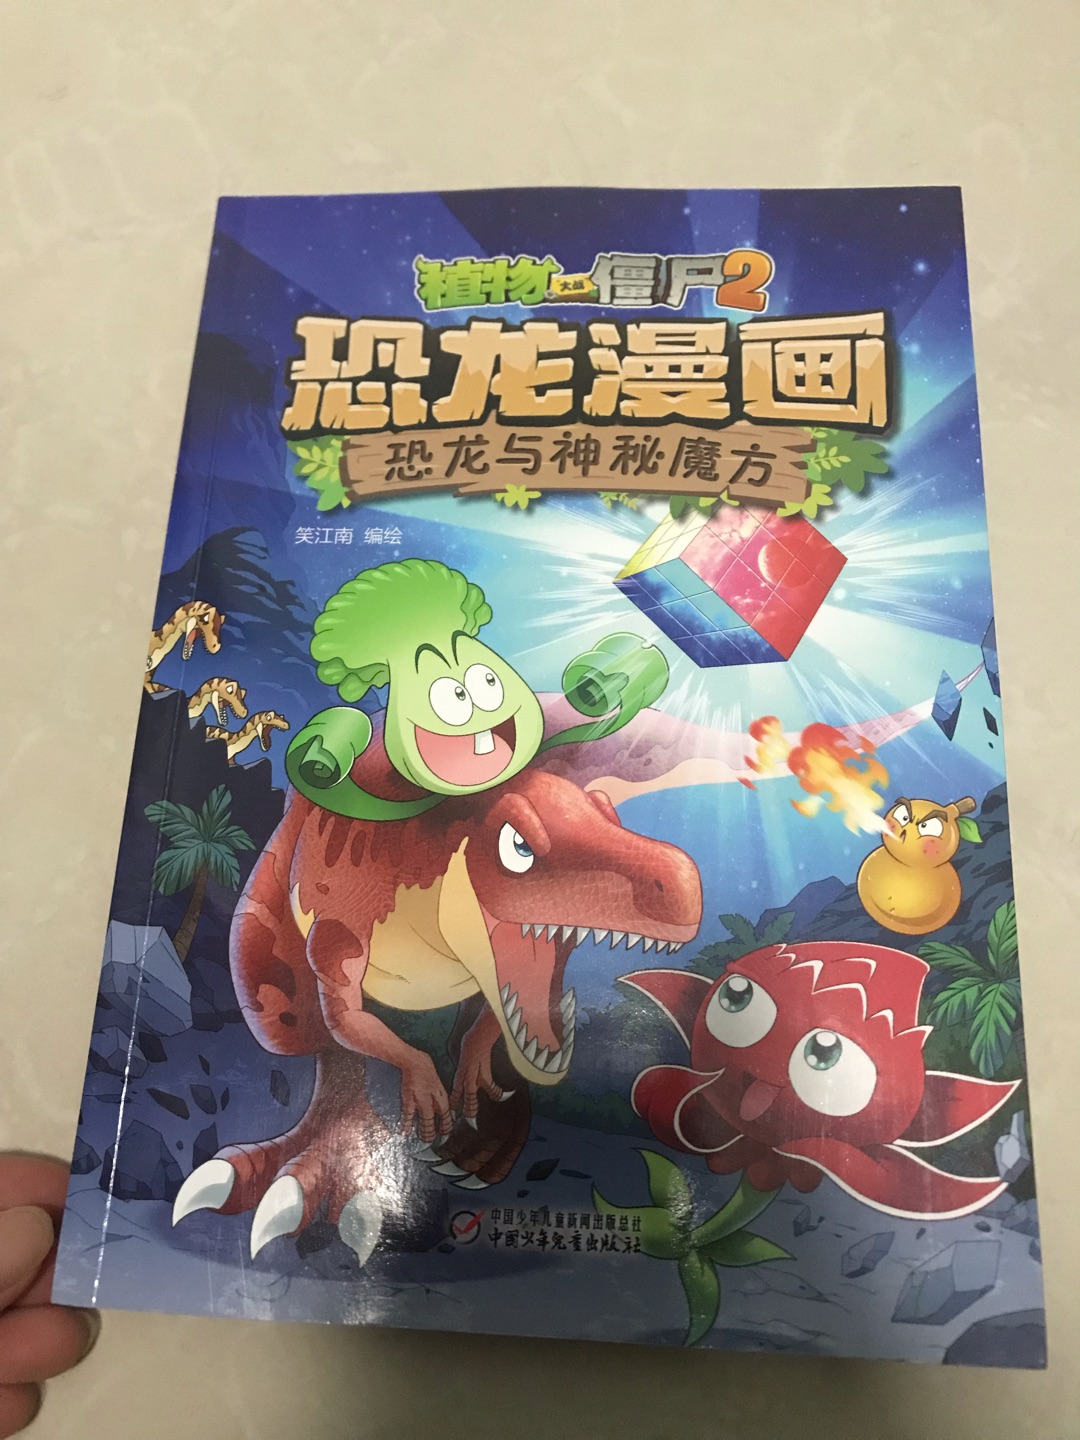 孩子很喜欢这套恐龙漫画，在书店看不太方便，遇上活动把一整套都买了，回家慢慢看。